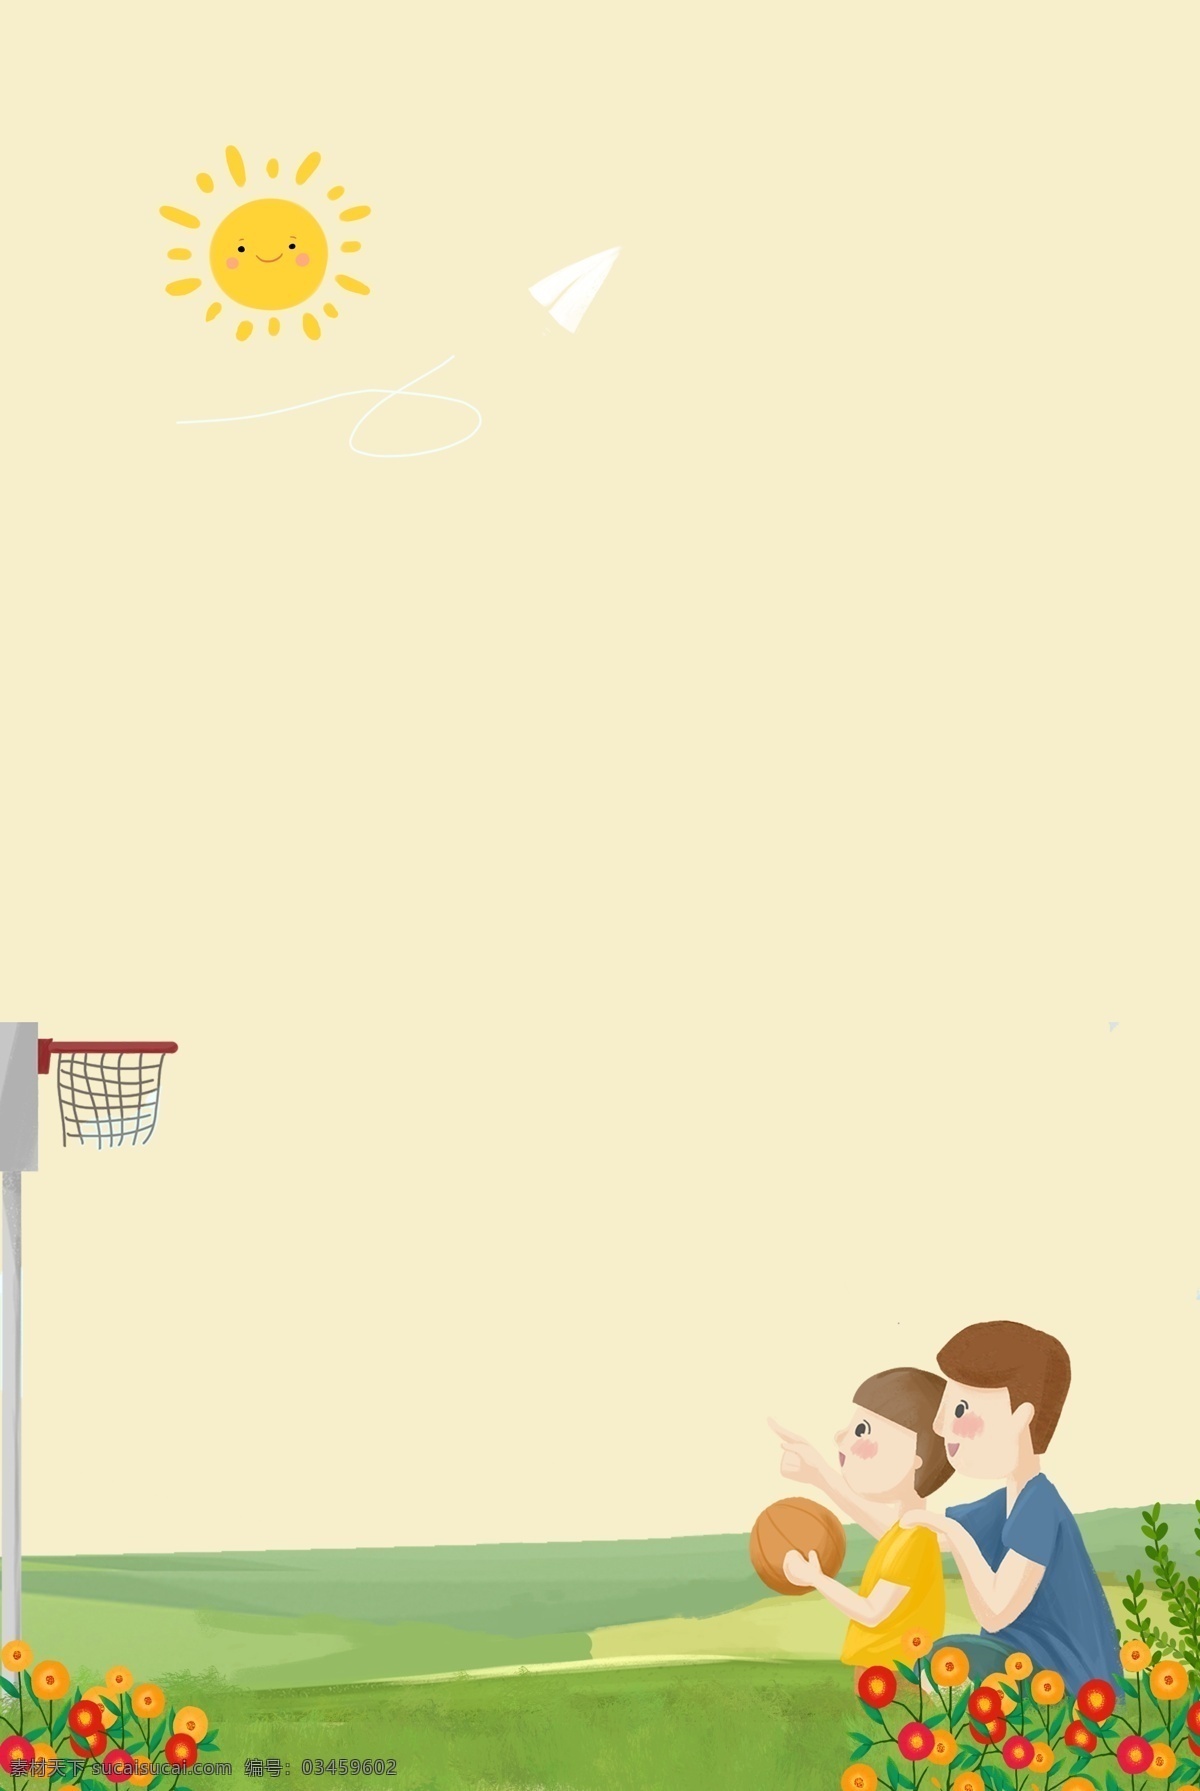 616 父亲节 黄色 天空 背景 父亲 孩子 草坪 纸飞机 篮球 球筐 太阳 鲜花 简约 卡通 手绘